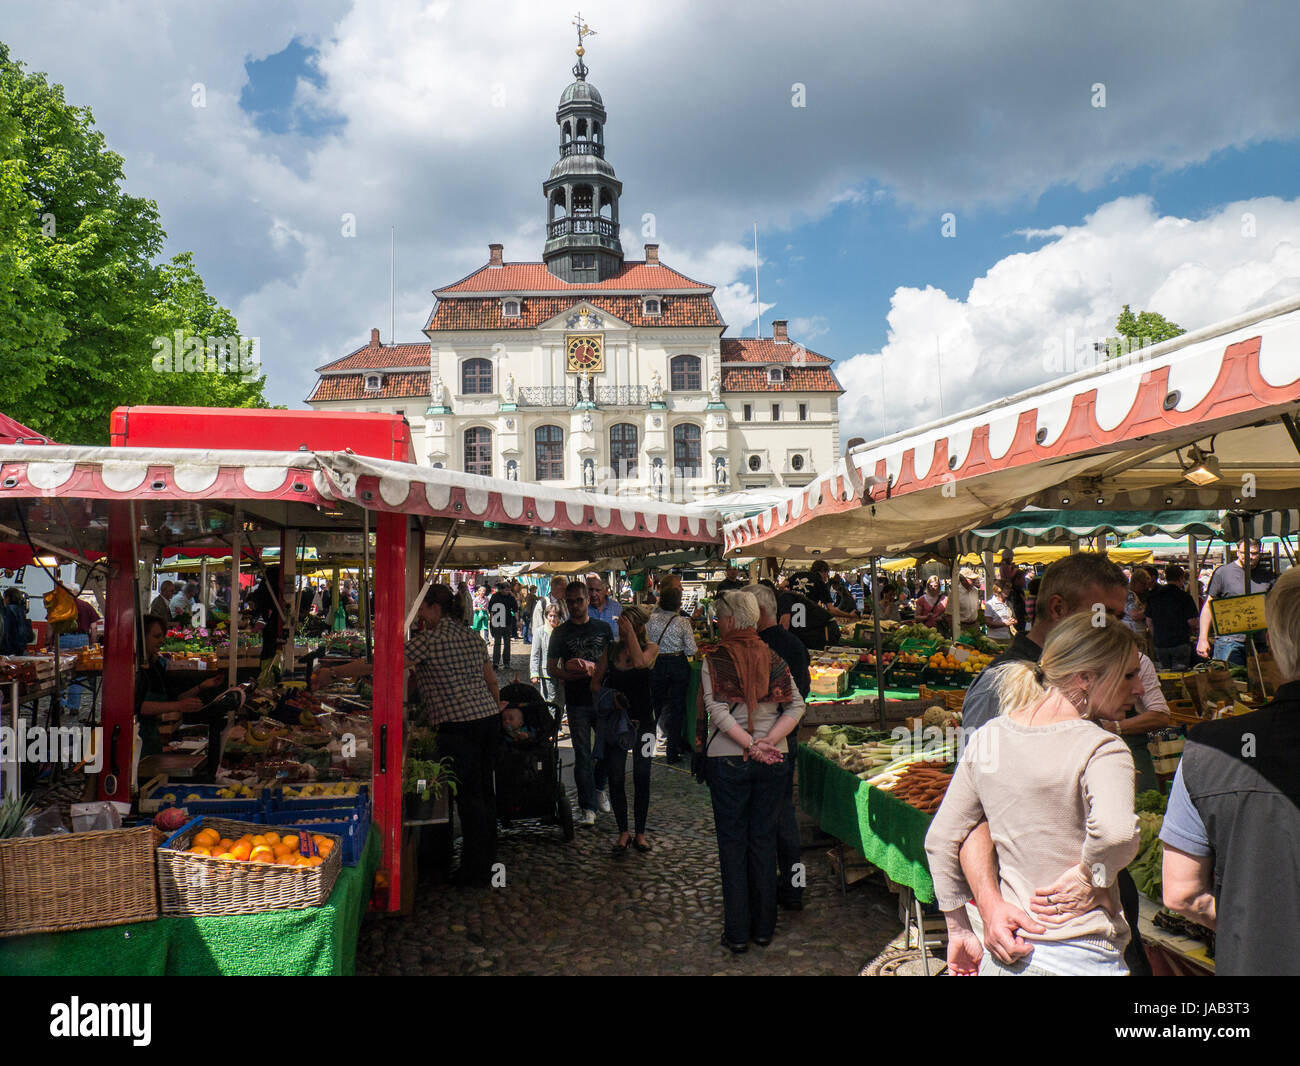 Street market on Marktplatz in Lüneburg, Niedersachsen, Germany. Stock Photo